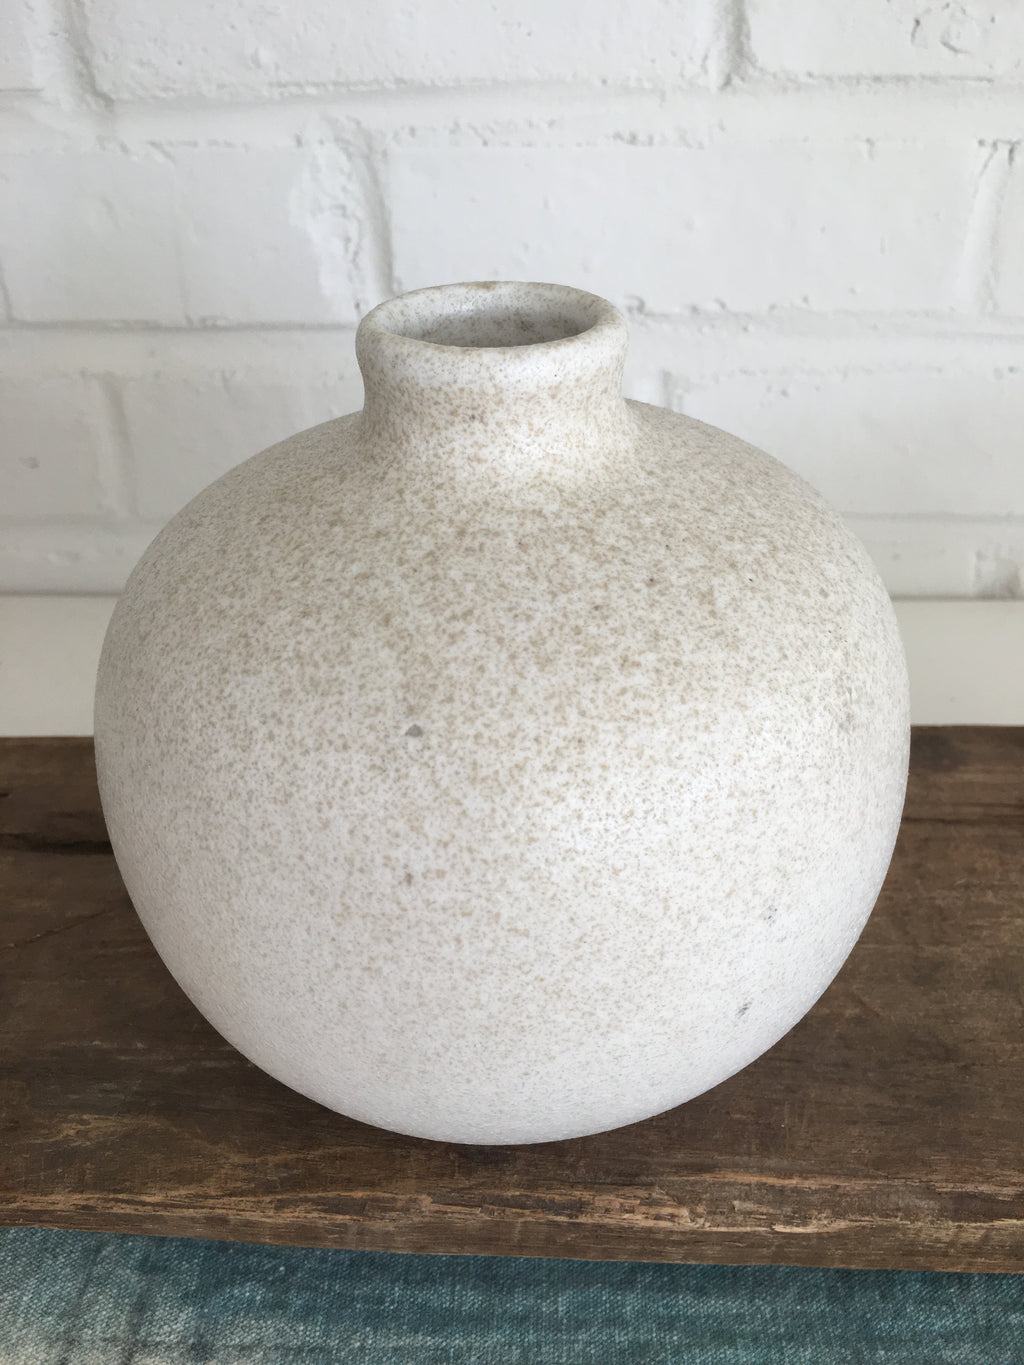 Terra-cotta Vase 5 & 3/4"